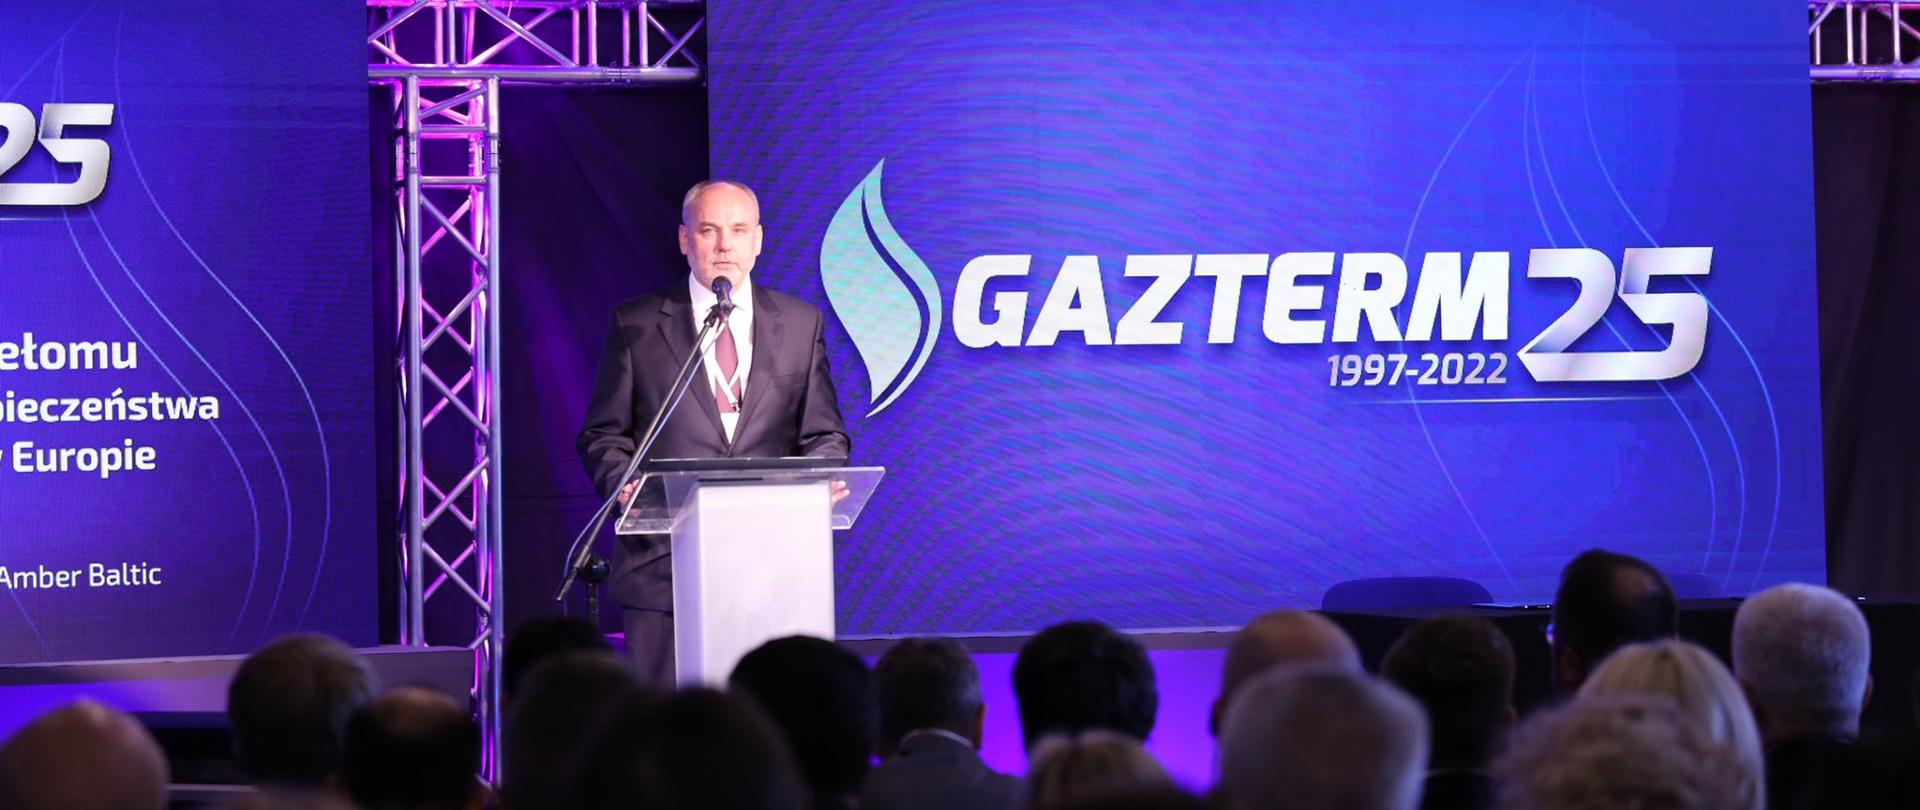 Wiceminister klimatu i środowiska na konferencji Gazterm